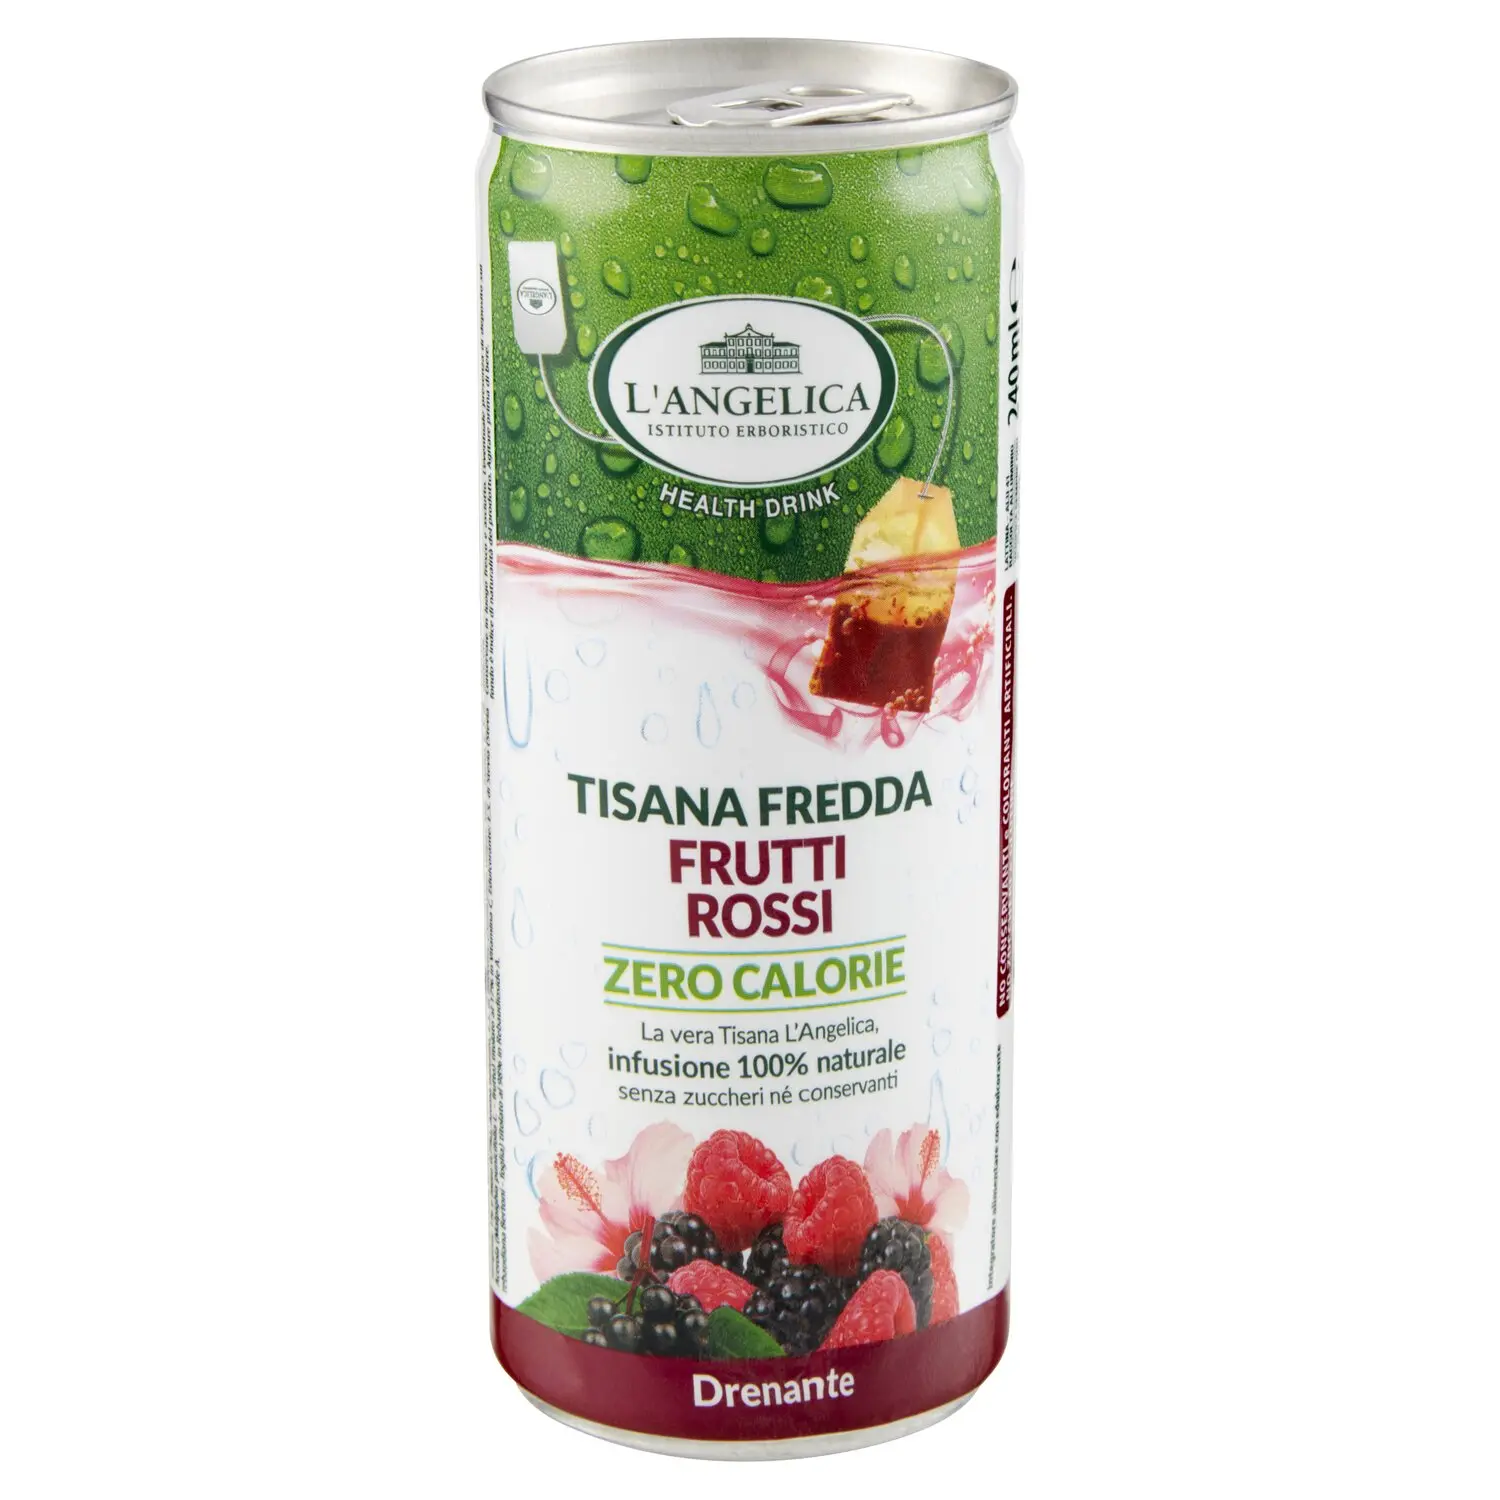 L'Angelica Health Drink Tisana Fredda Frutti Rossi Zero Calorie